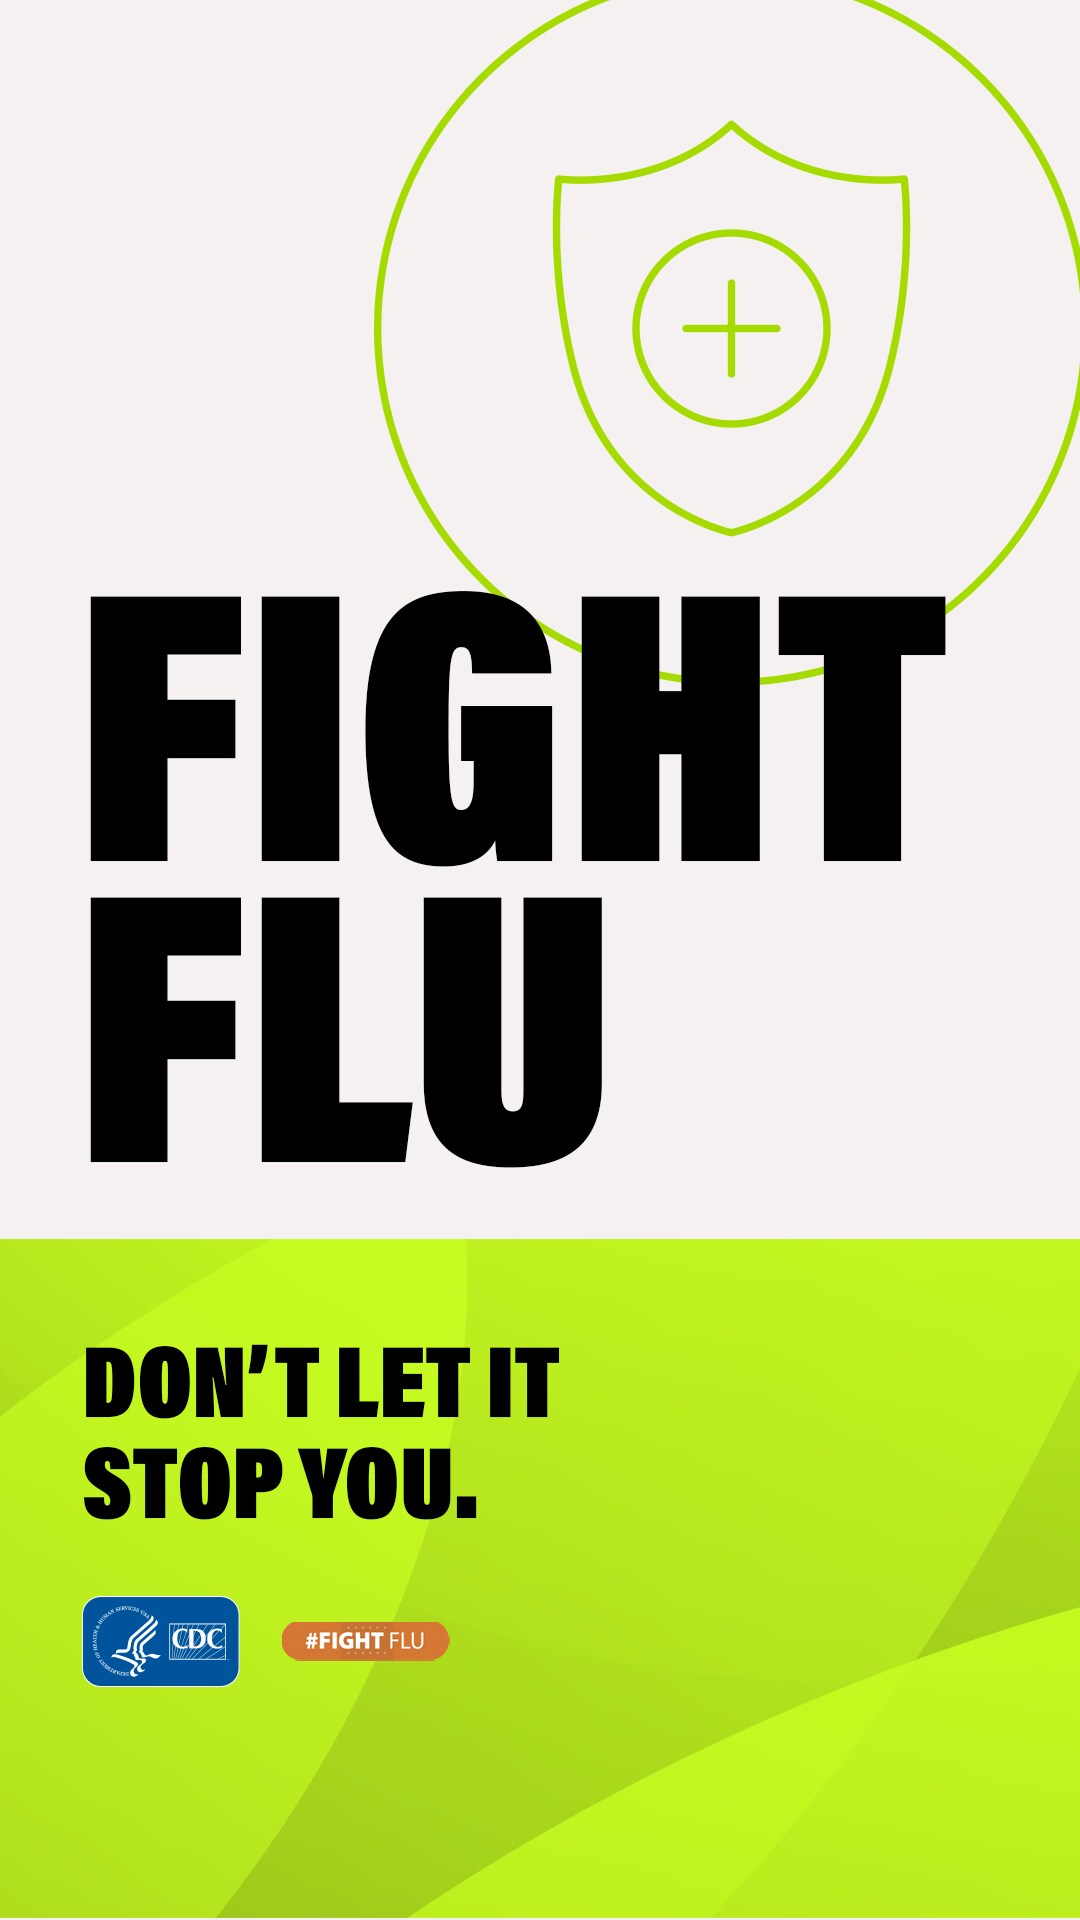 Help Them Fight Flu